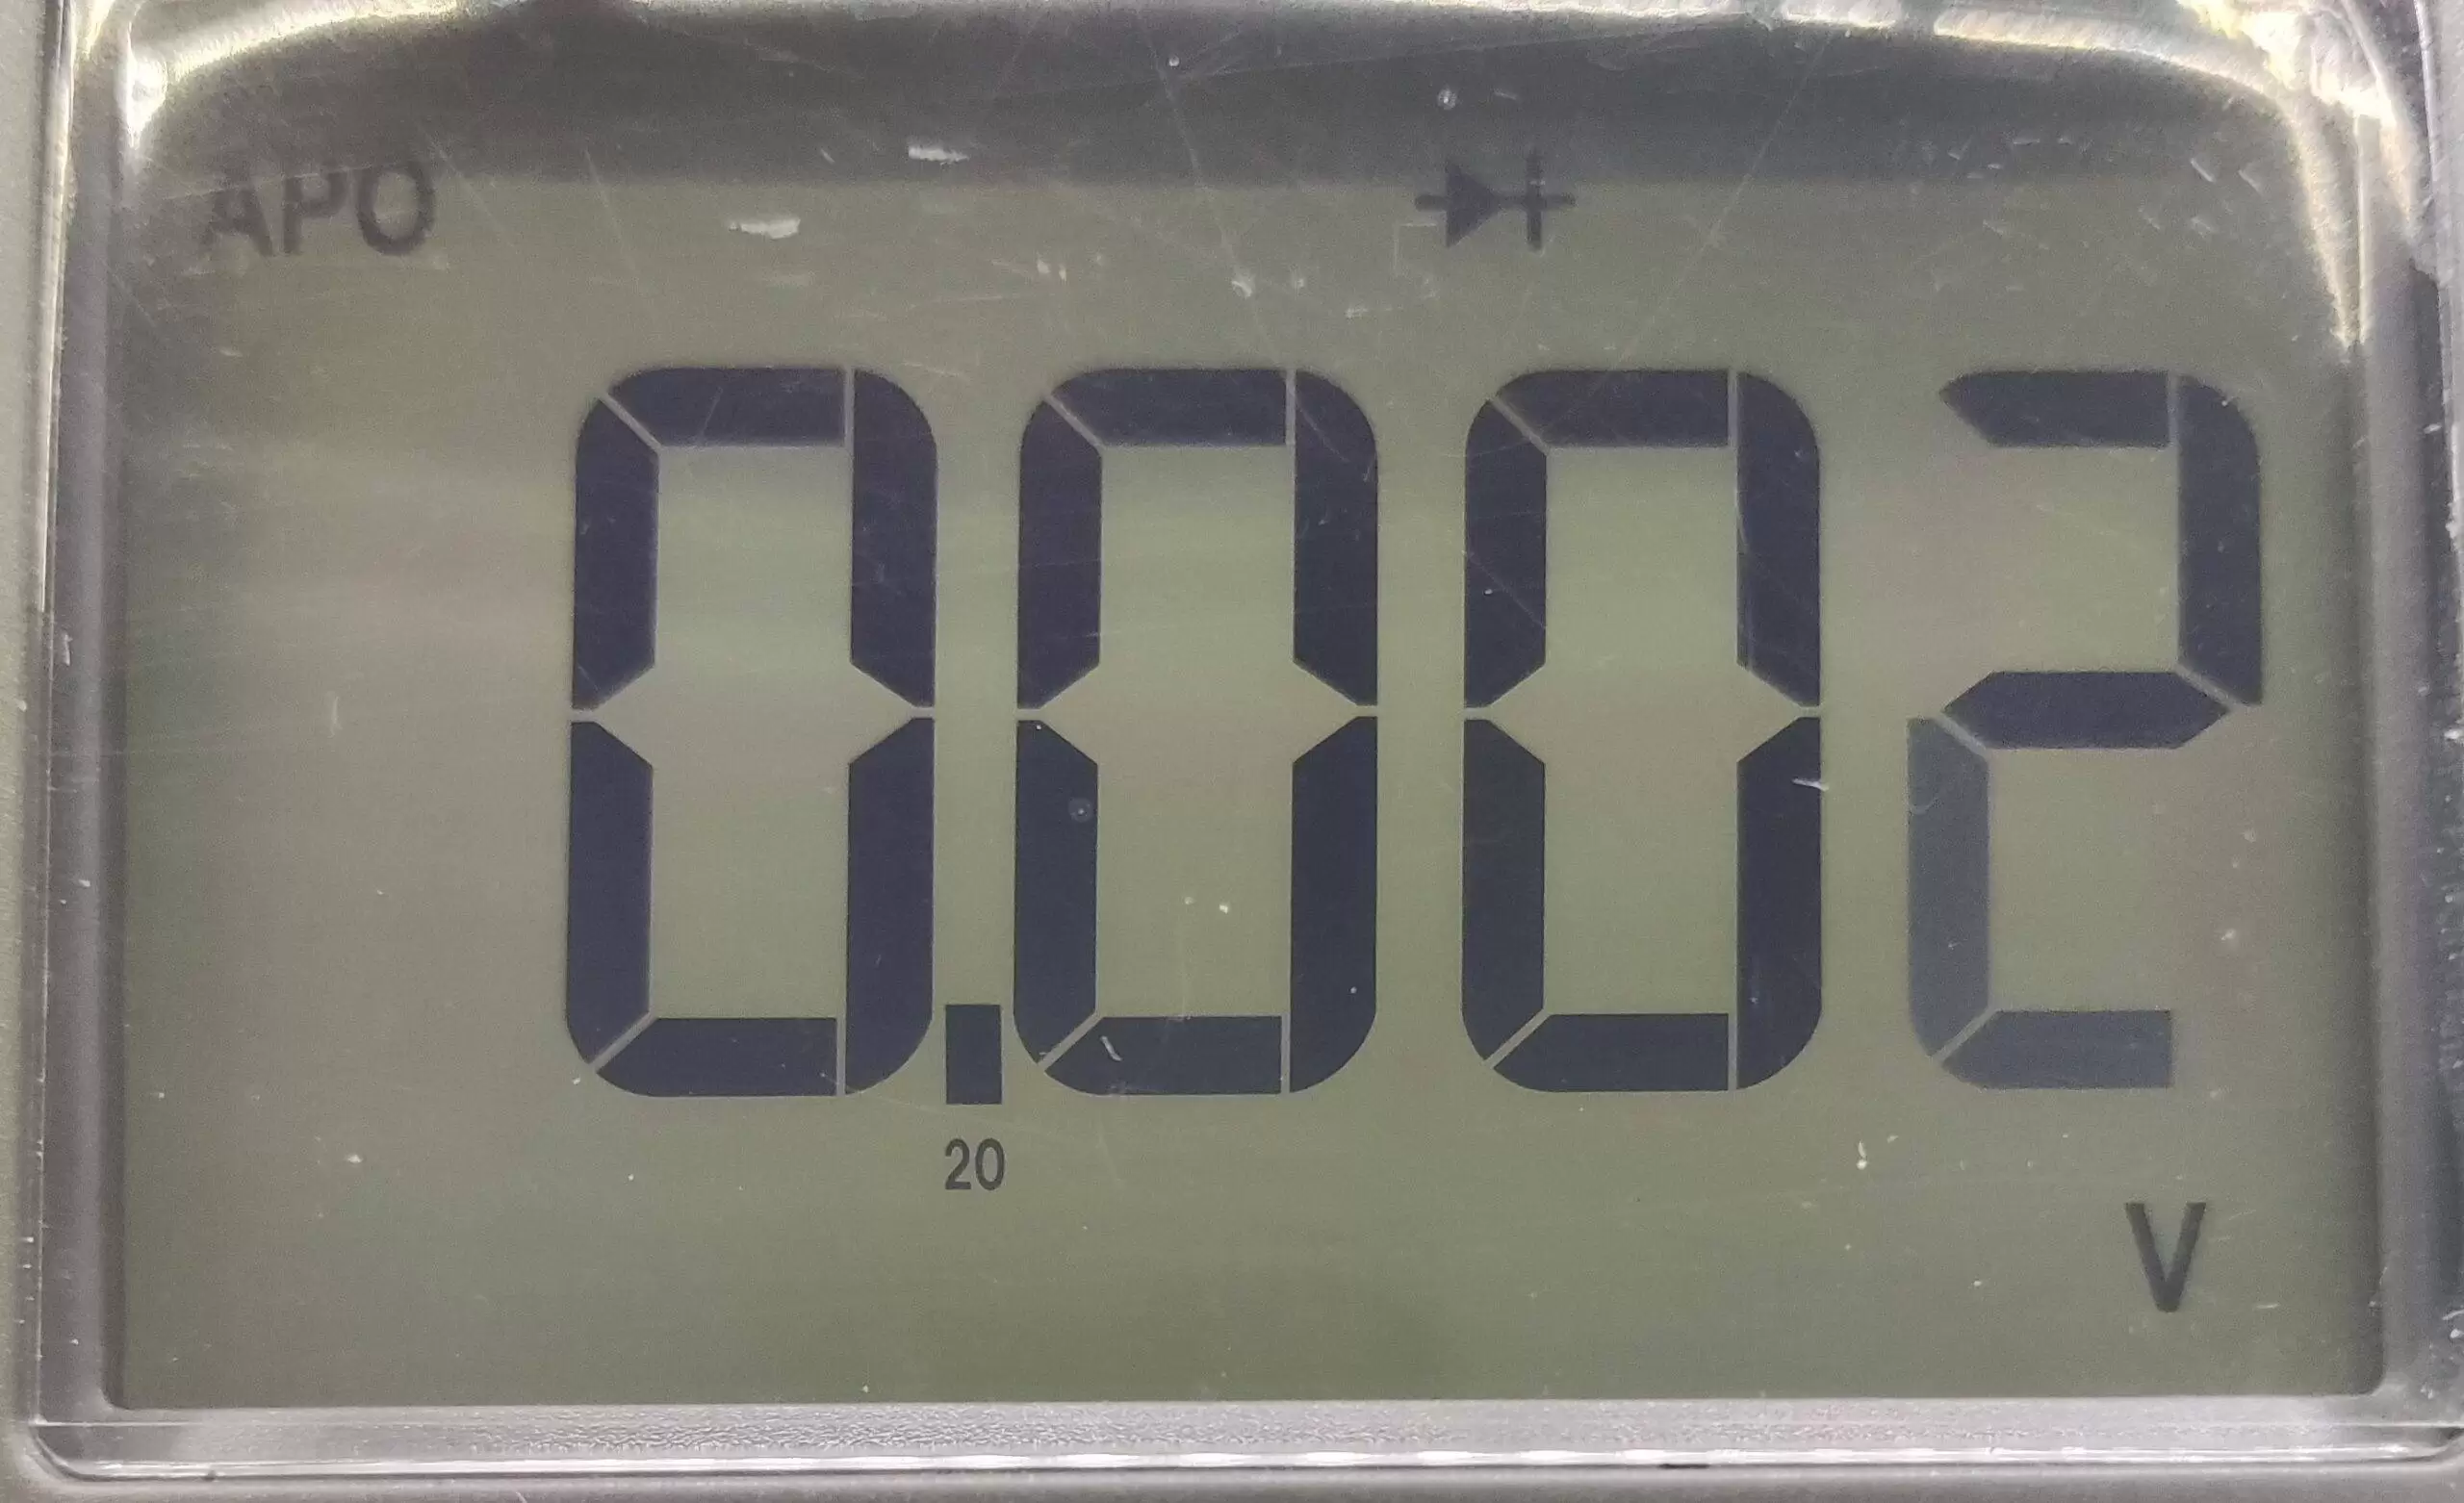 عدد روی دستگاه مولتی متر